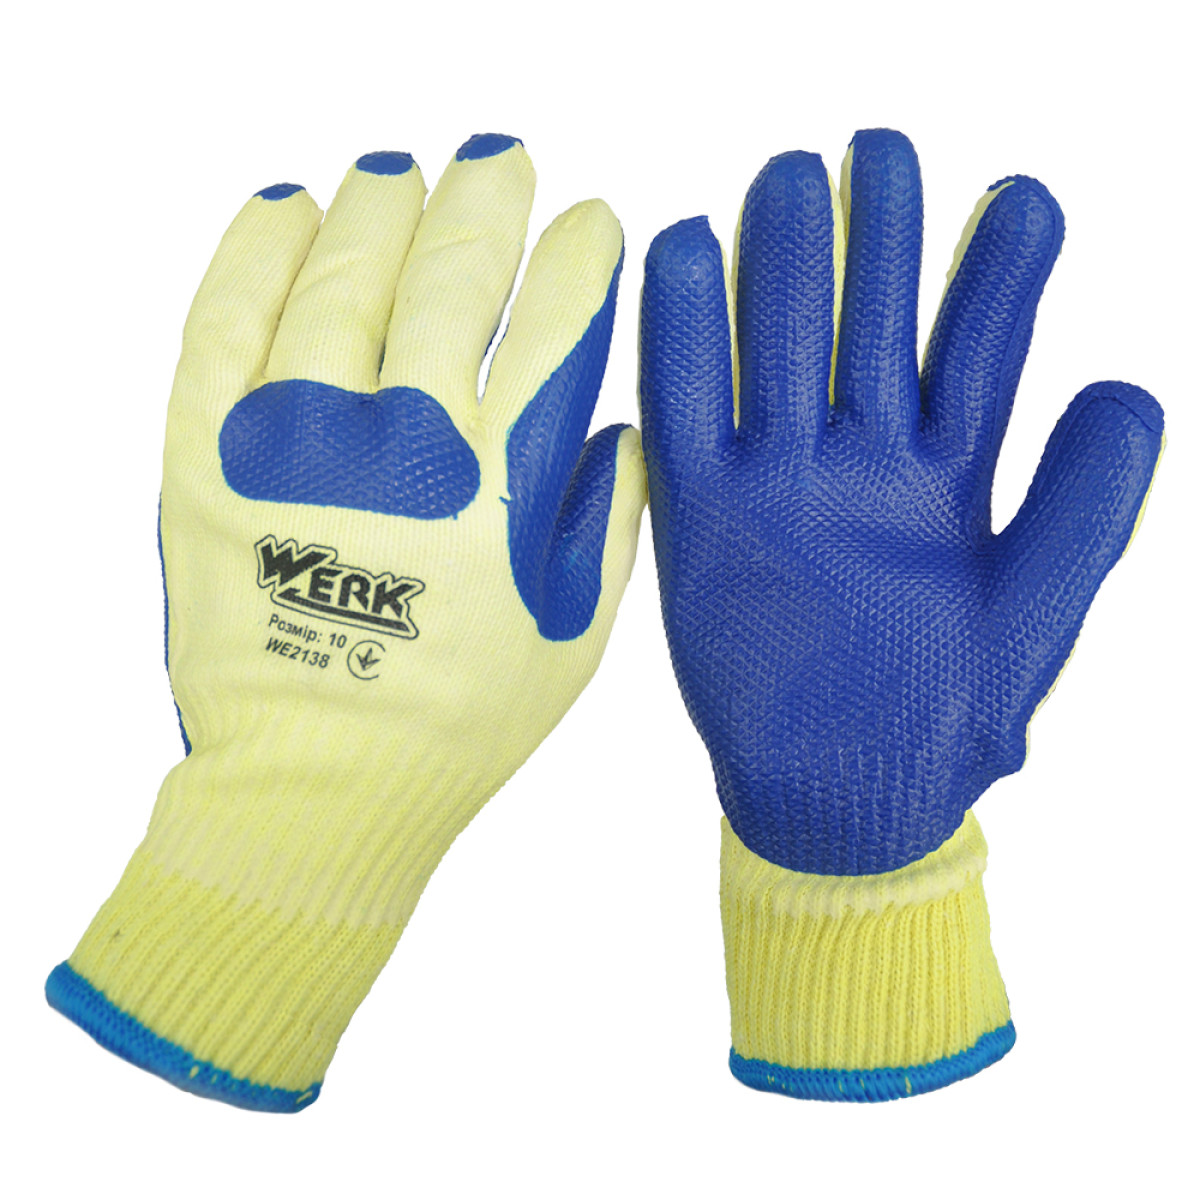 Перчатки с синим латексным покрытием Werk WE2138